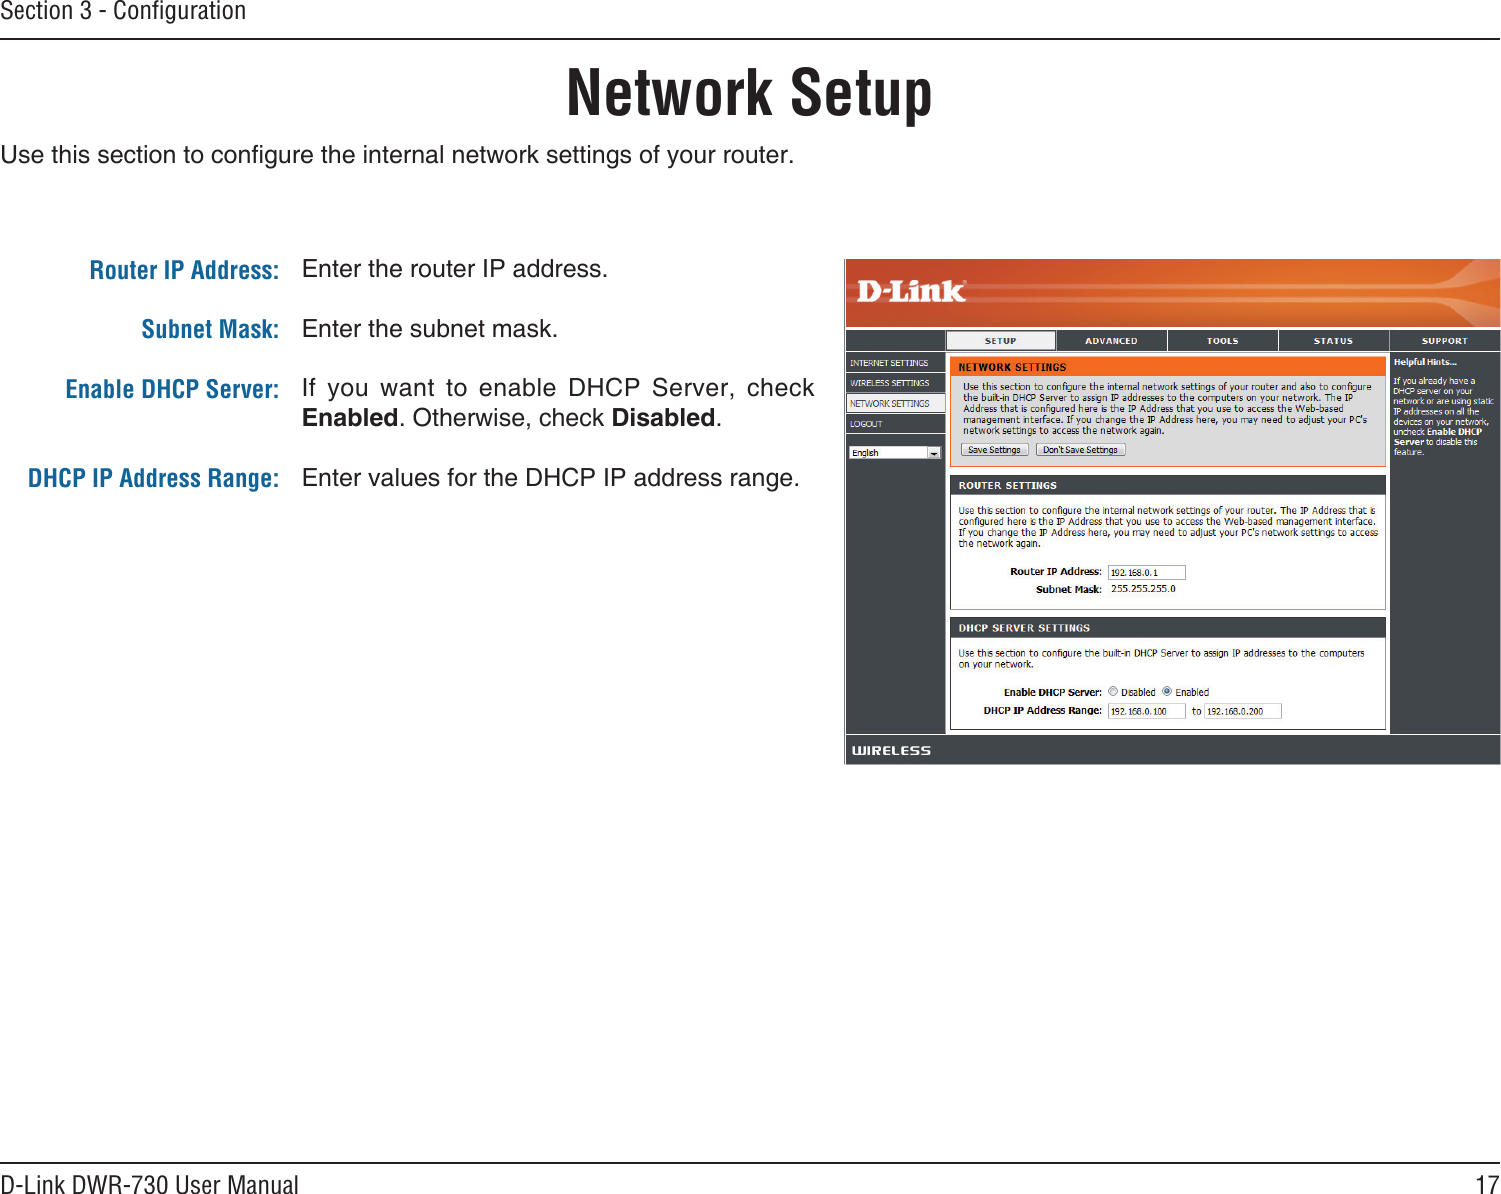 17D-Link DWR-730 User ManualSection 3 - ConﬁgurationNetwork Setup       Router IP Address:Subnet Mask:Enable DHCP Server:DHCP IP Address Range: